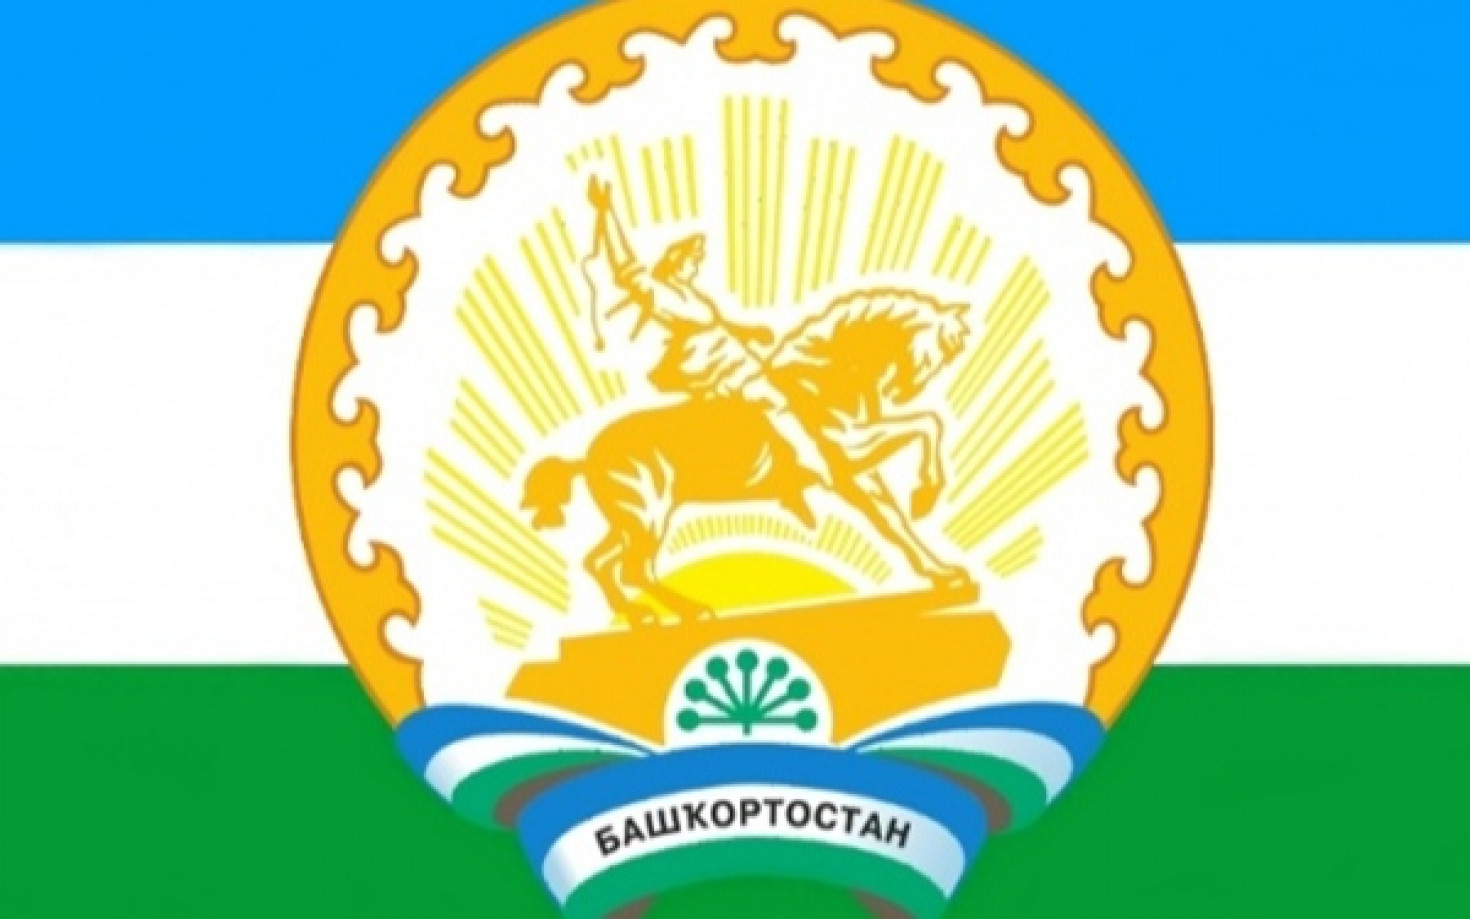 Результаты рассмотрения заявок о признании субъектов малого и среднего предпринимательства социальными предприятиями в Республике Башкортостан